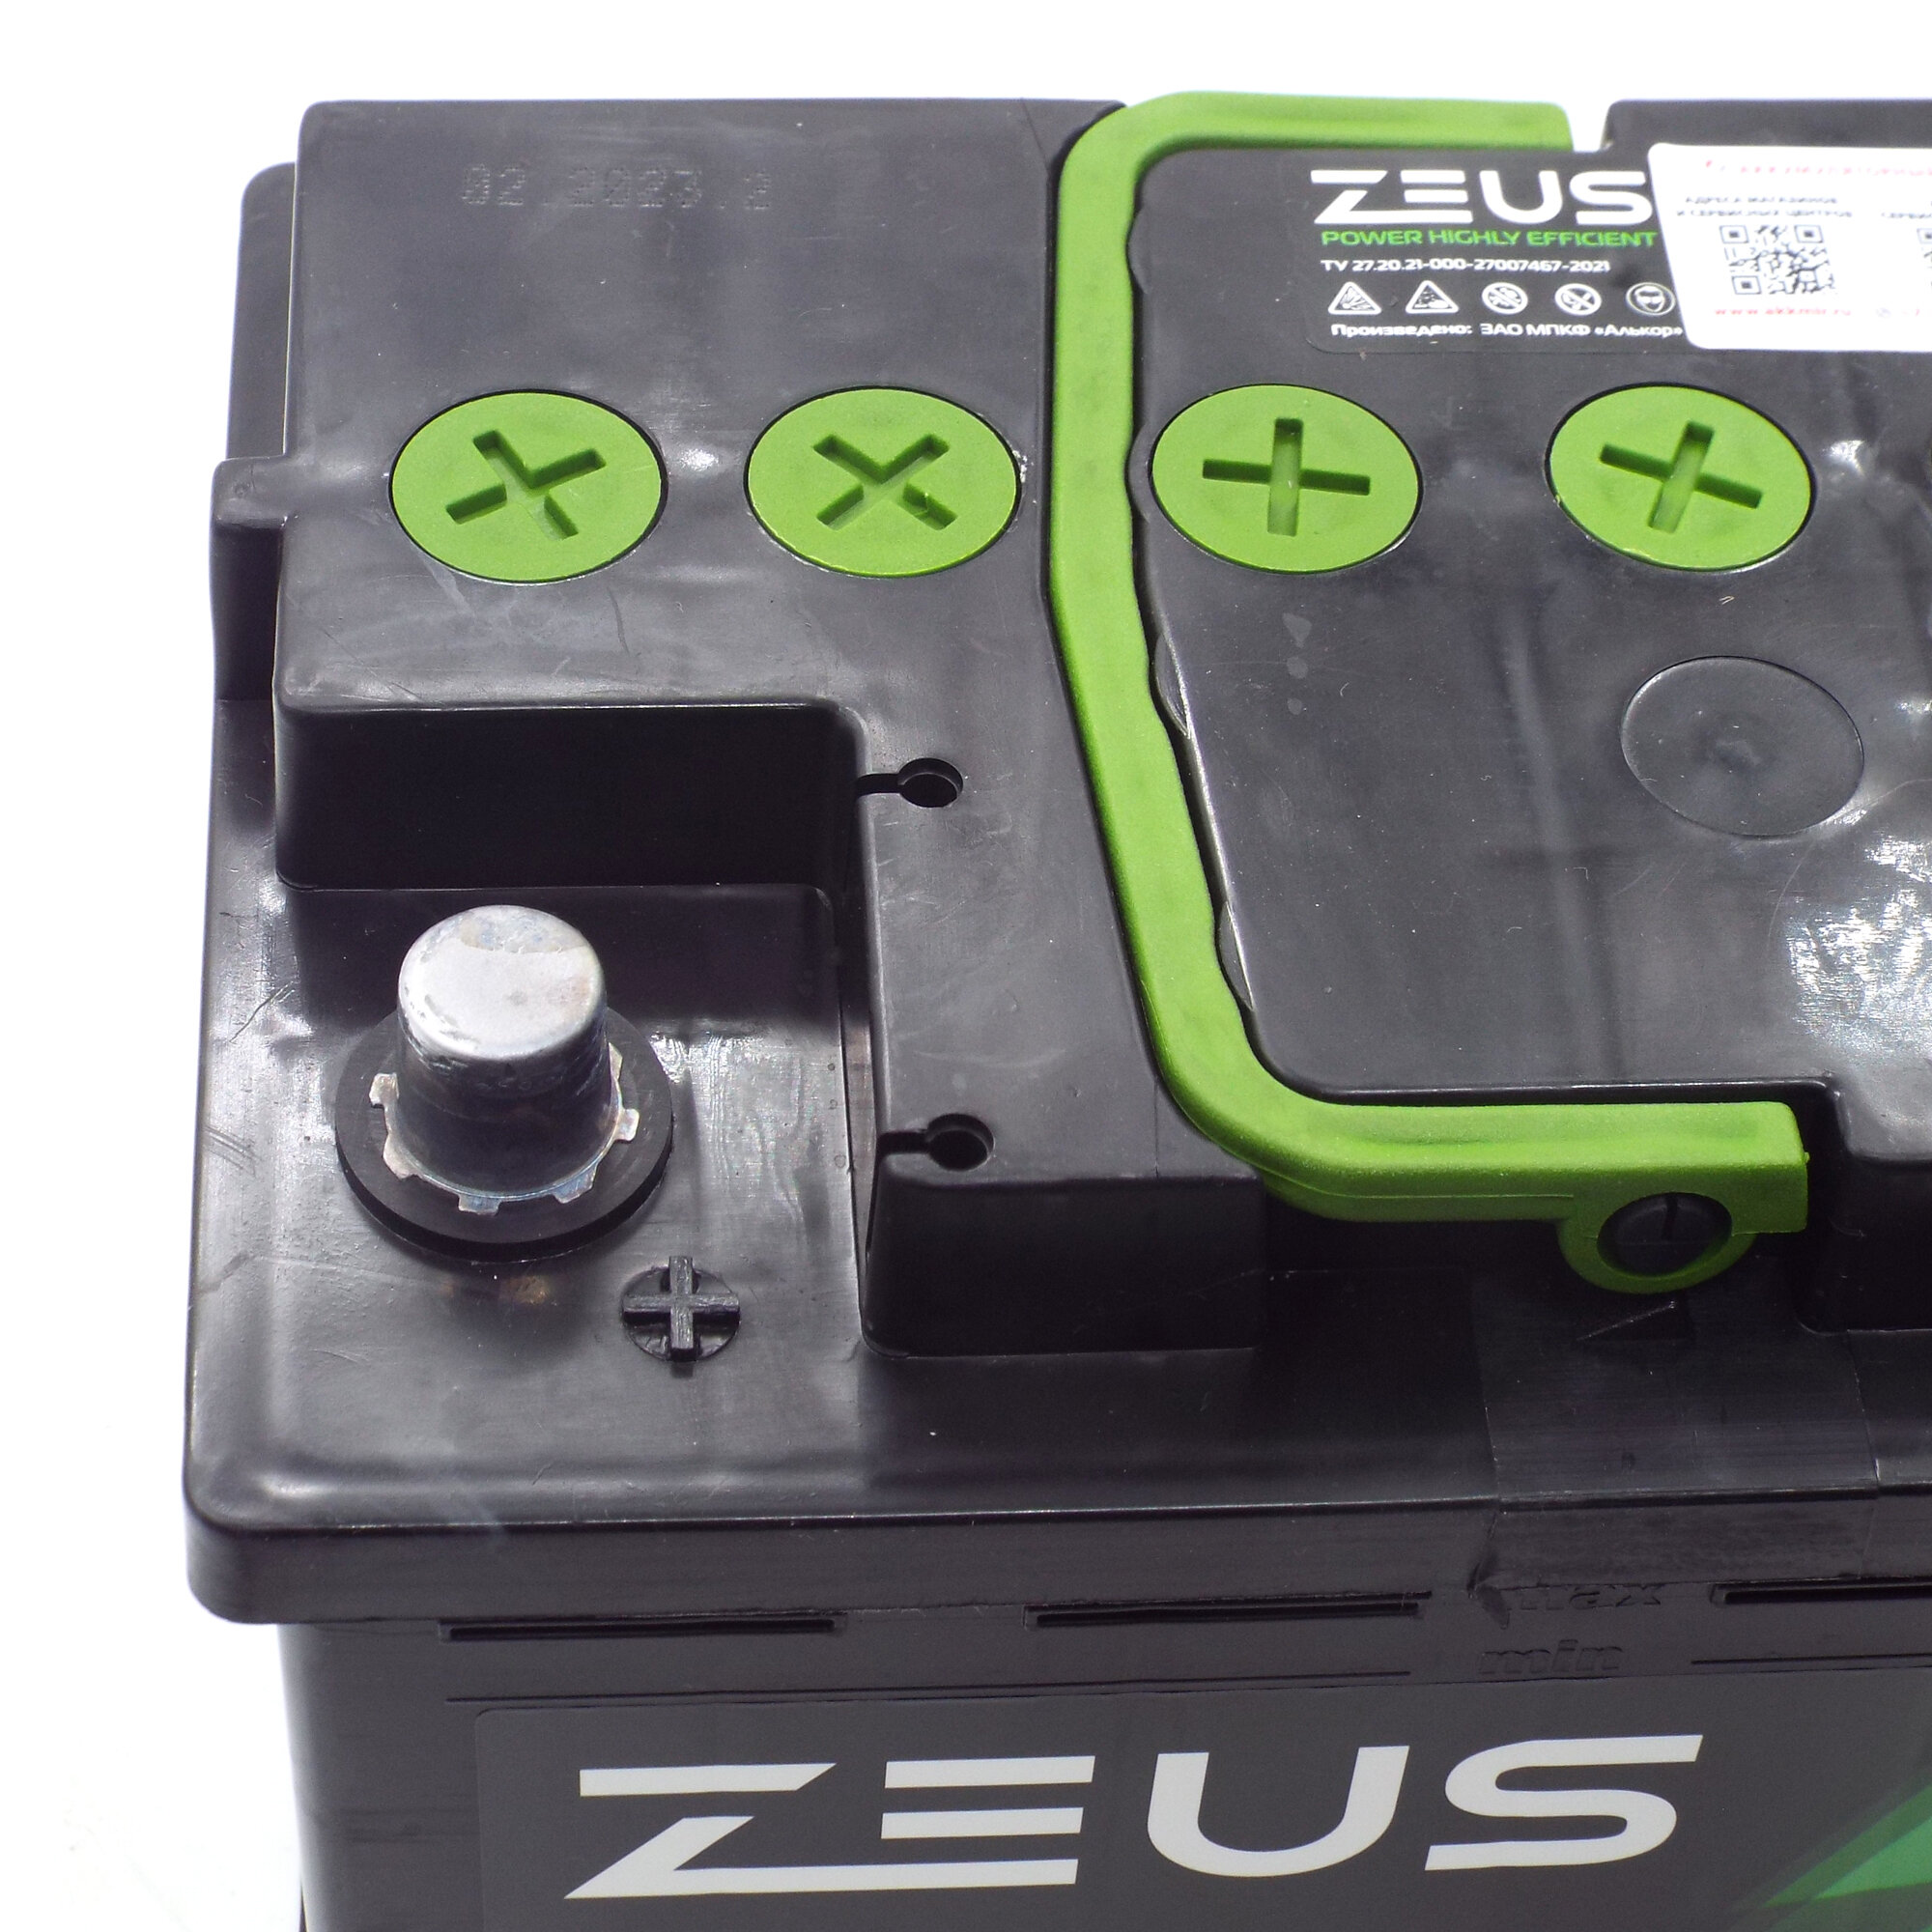 Аккумулятор автомобильный АКБ для автомобилей Аккумуляторная батарея для машины ZEUS POWER 55 А*ч 242x175x190 п п Прямая полярность